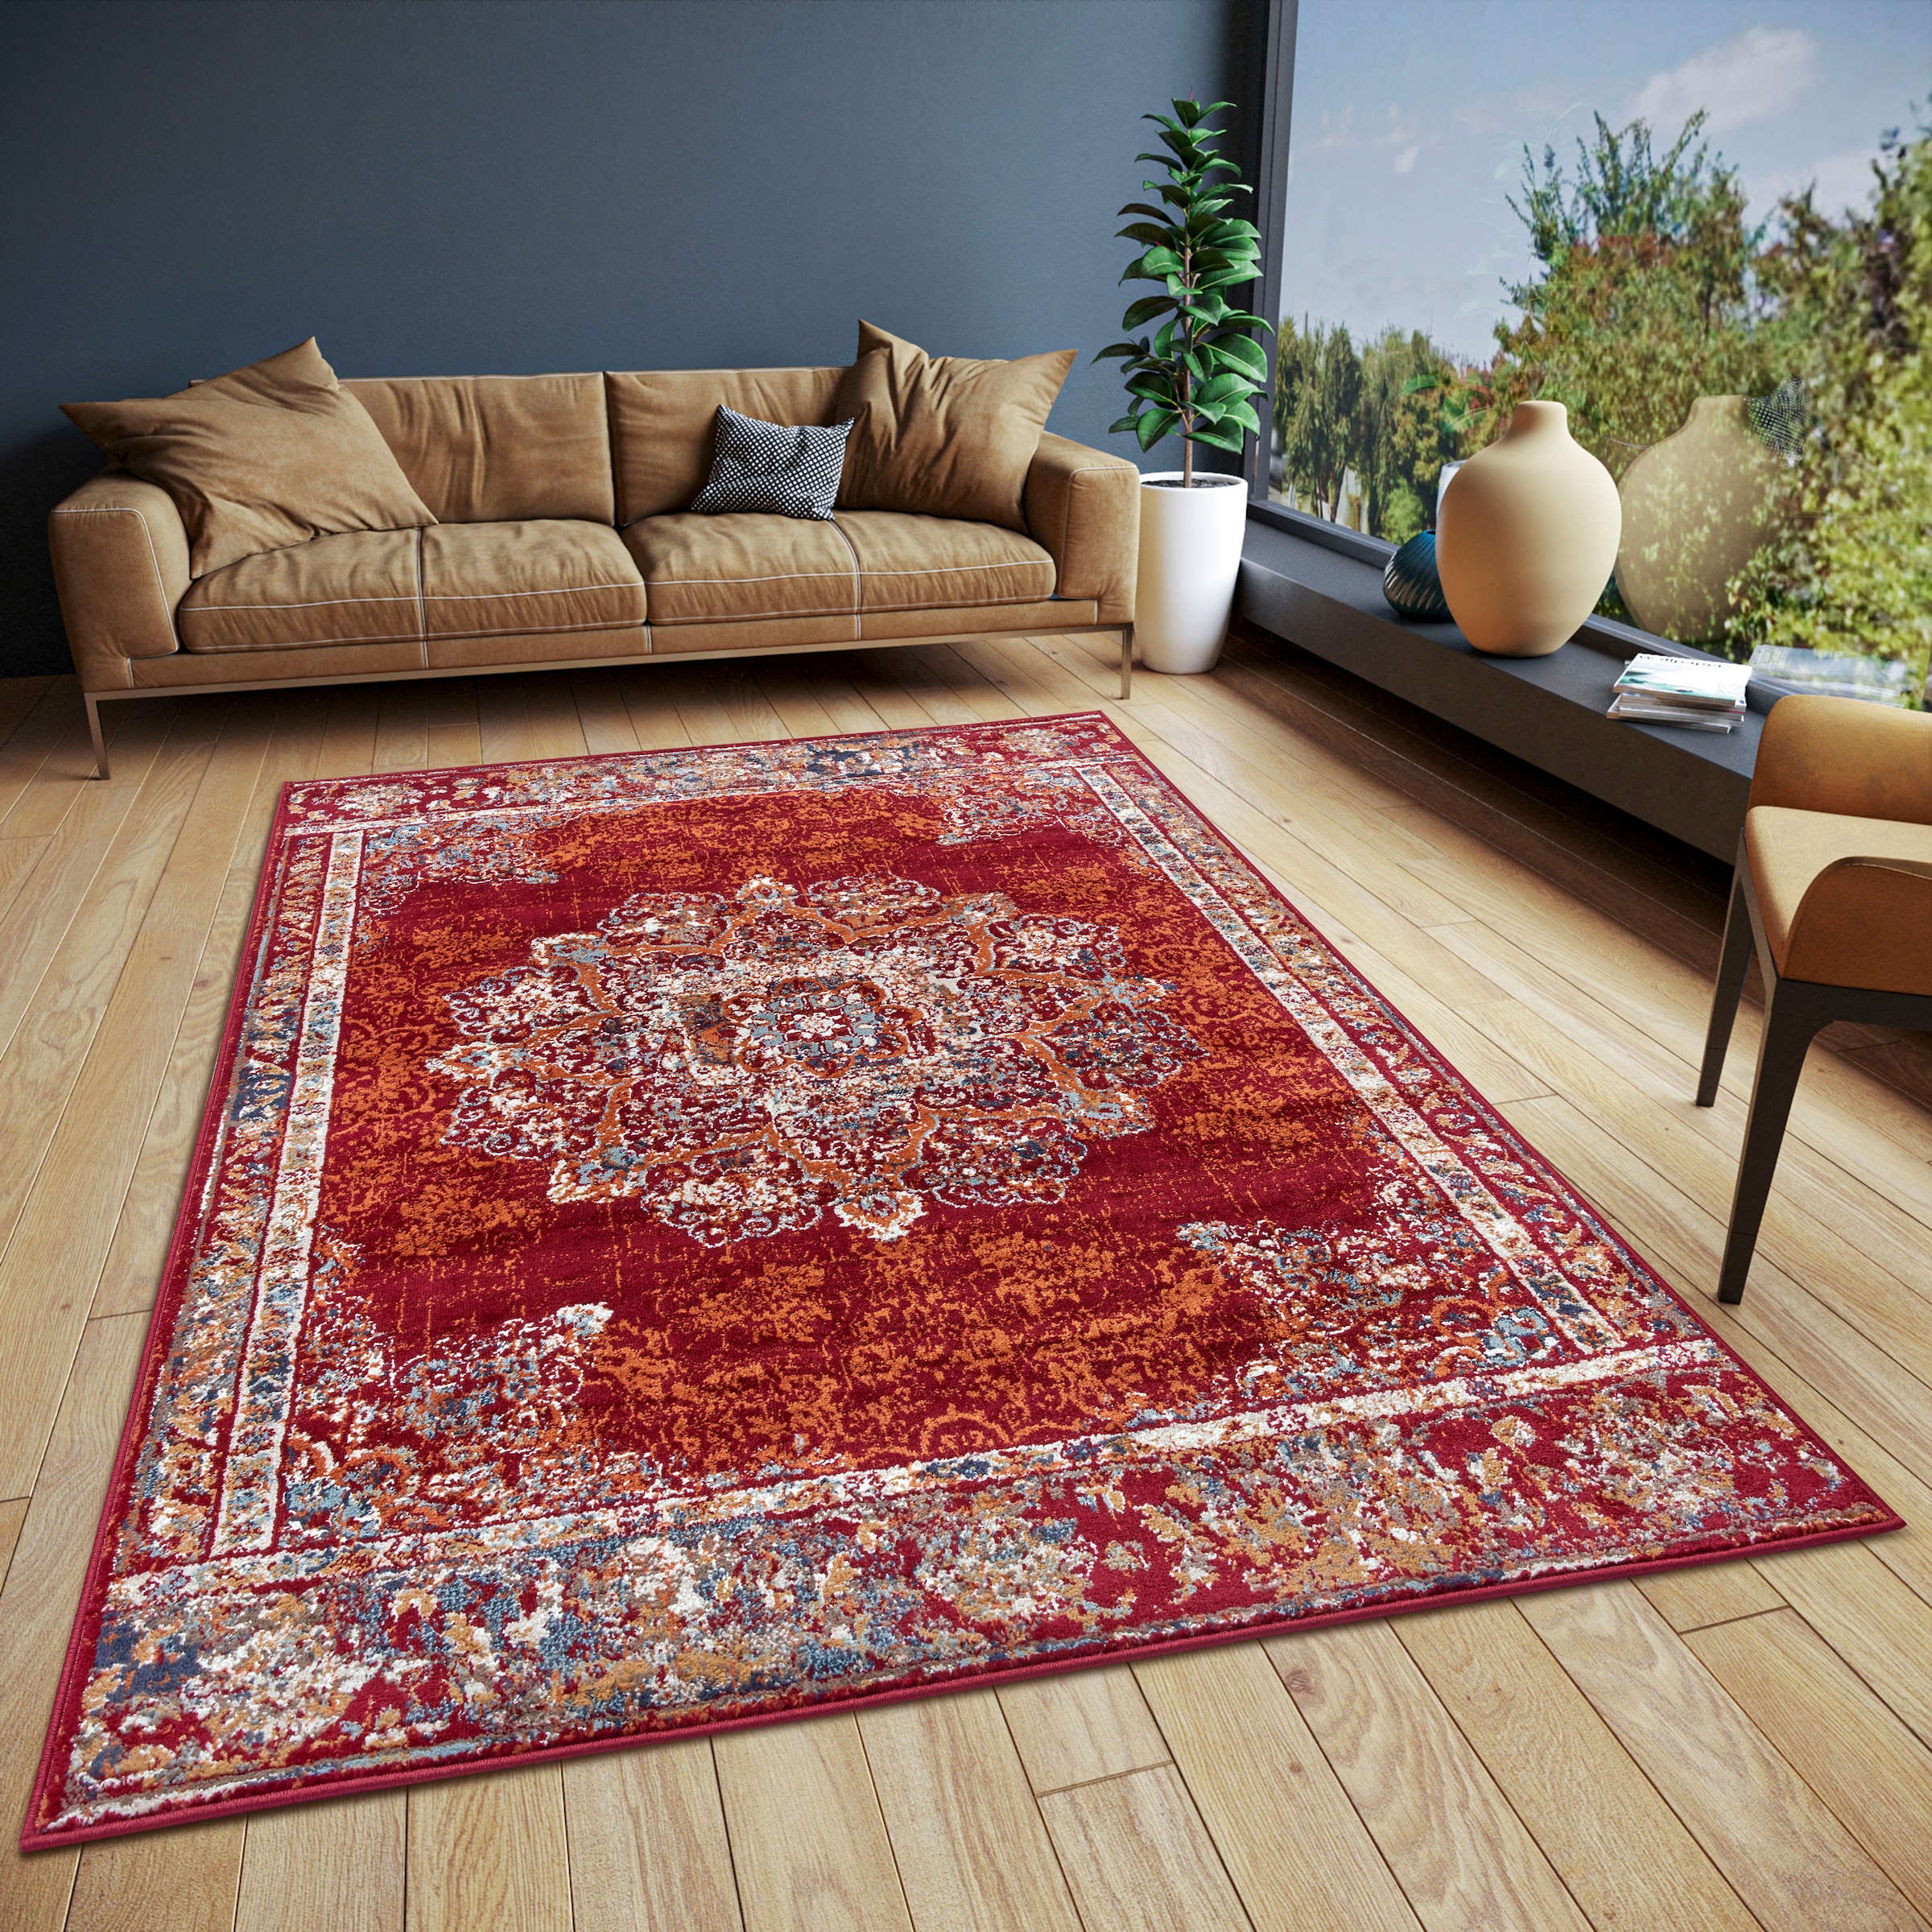 HANSE Home Teppich »Maderno«, rechteckig, Orientalisch, Orient, Kurzflor, Wohnzimmer, Schlafzimmer, Esszimmer